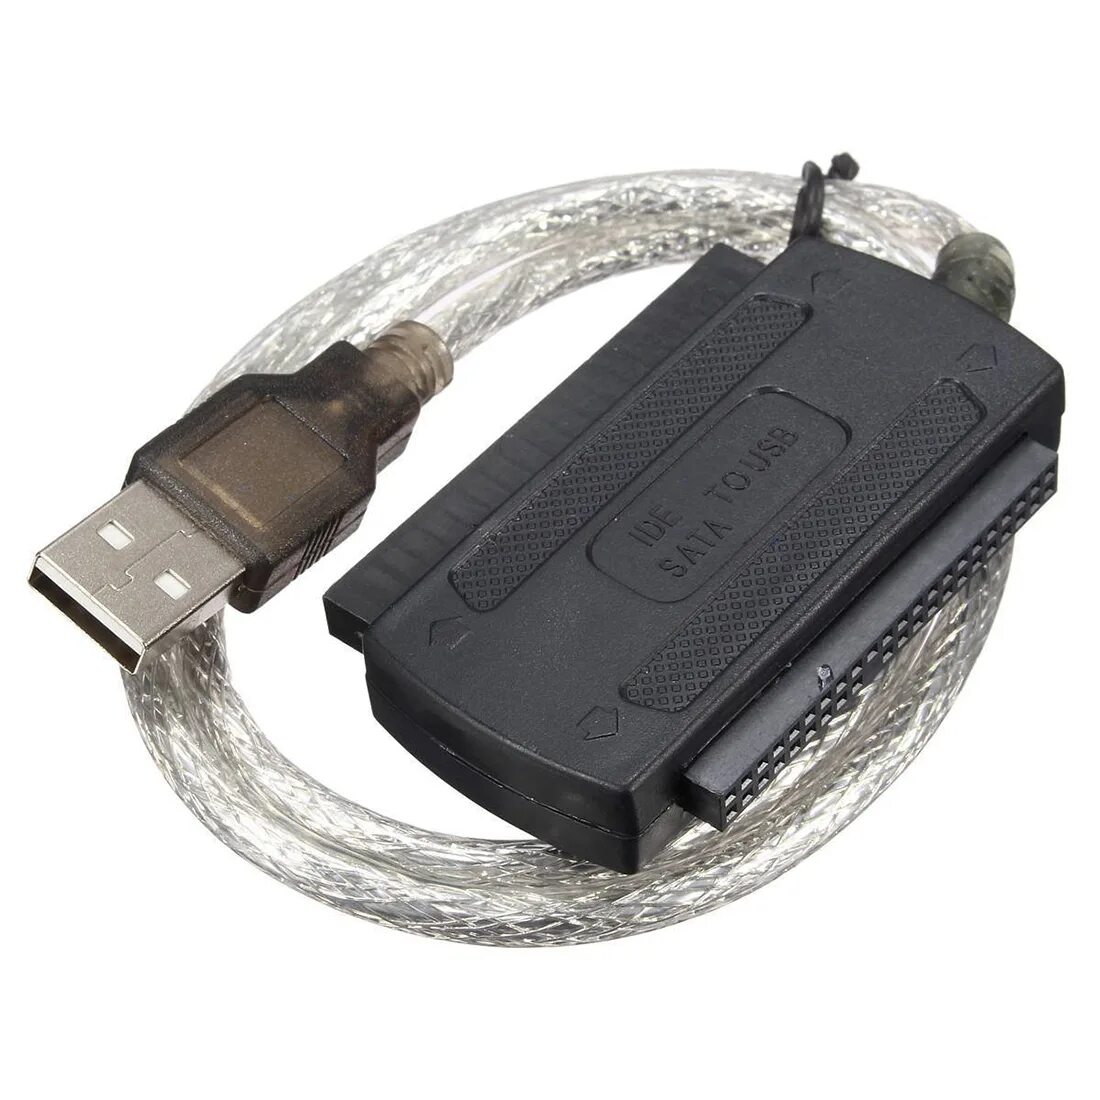 Купить адаптер для жесткого. Адаптер USB - ide 2.5, ide 3.5, SATA. Переходник USB SATA 2.5. Переходник SATA + ide USB 2.5 жестких дисков. USB 2.0 to ide SATA Cable sga998.